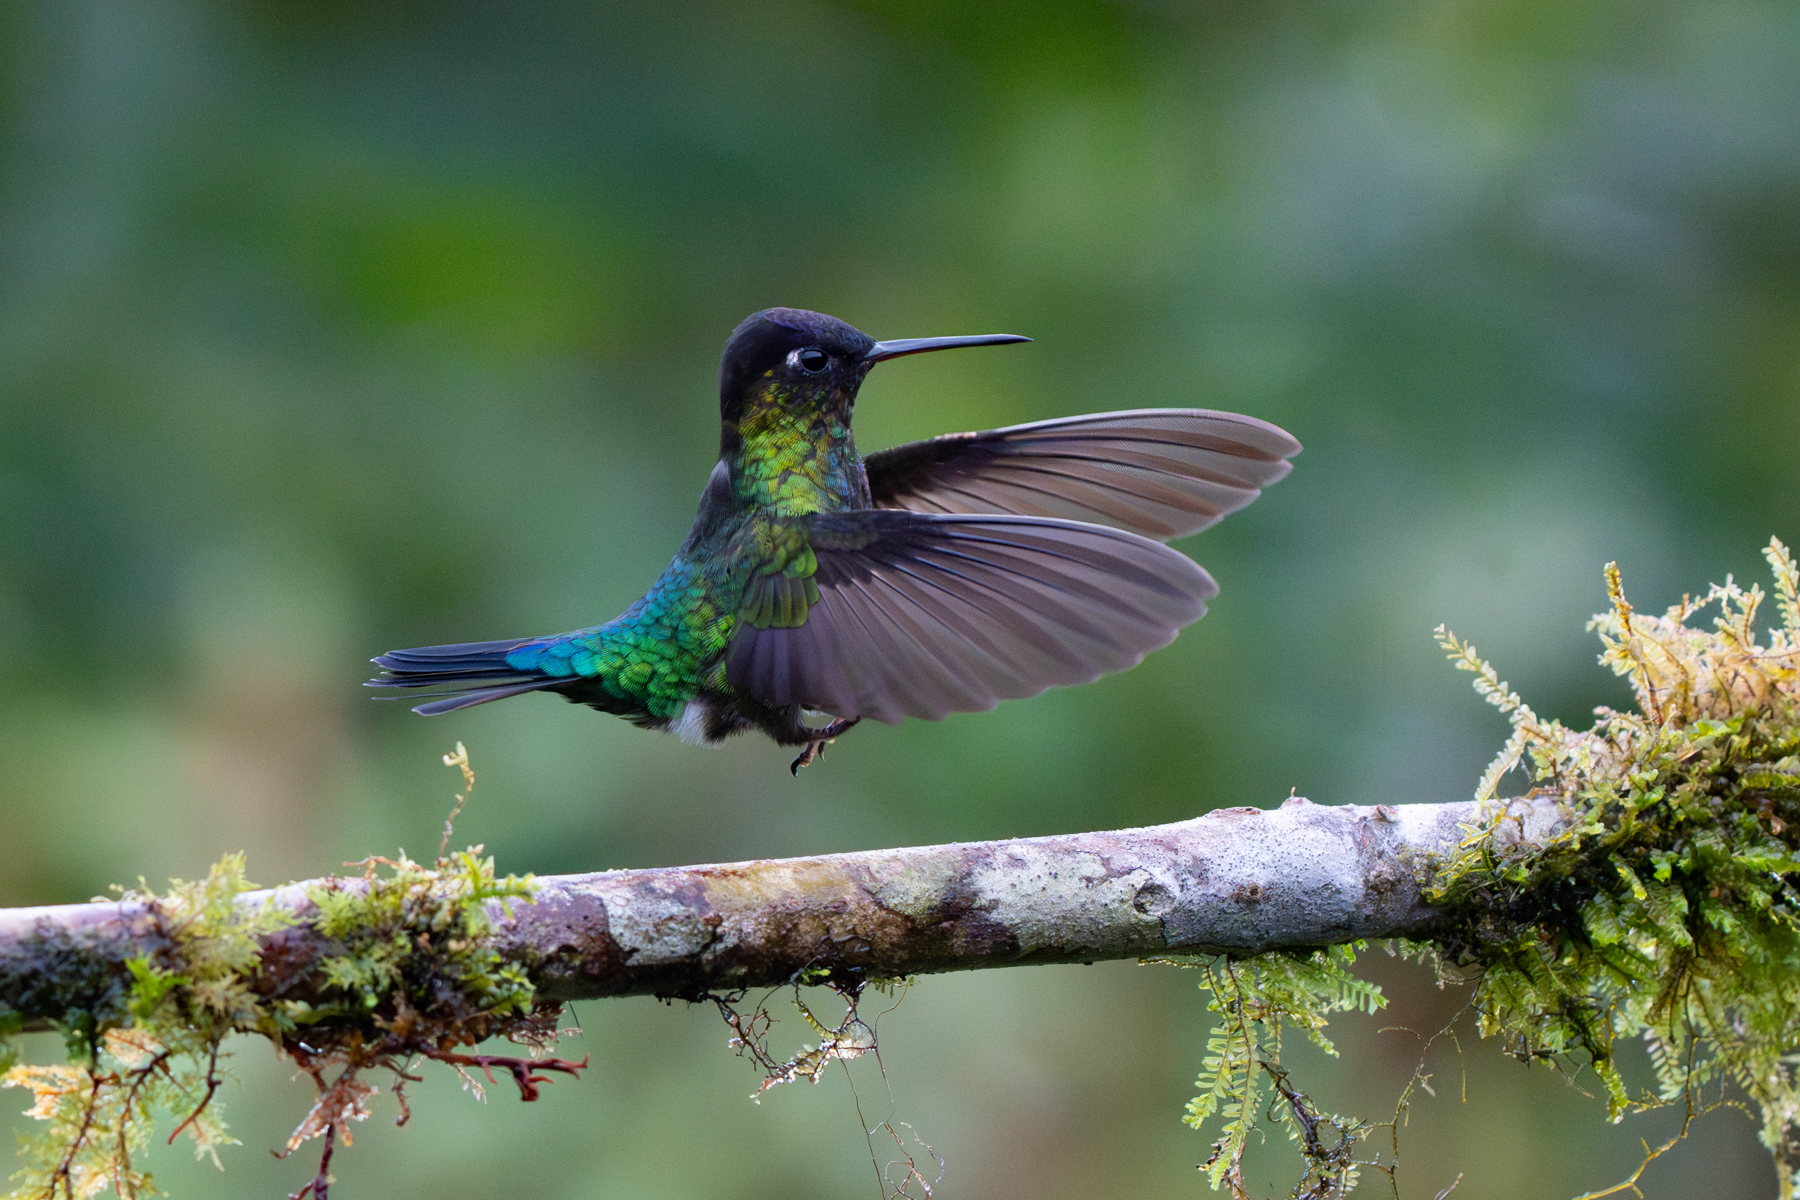 A Fiery-throated Hummingbird in flight (image by Inger Vandyke)